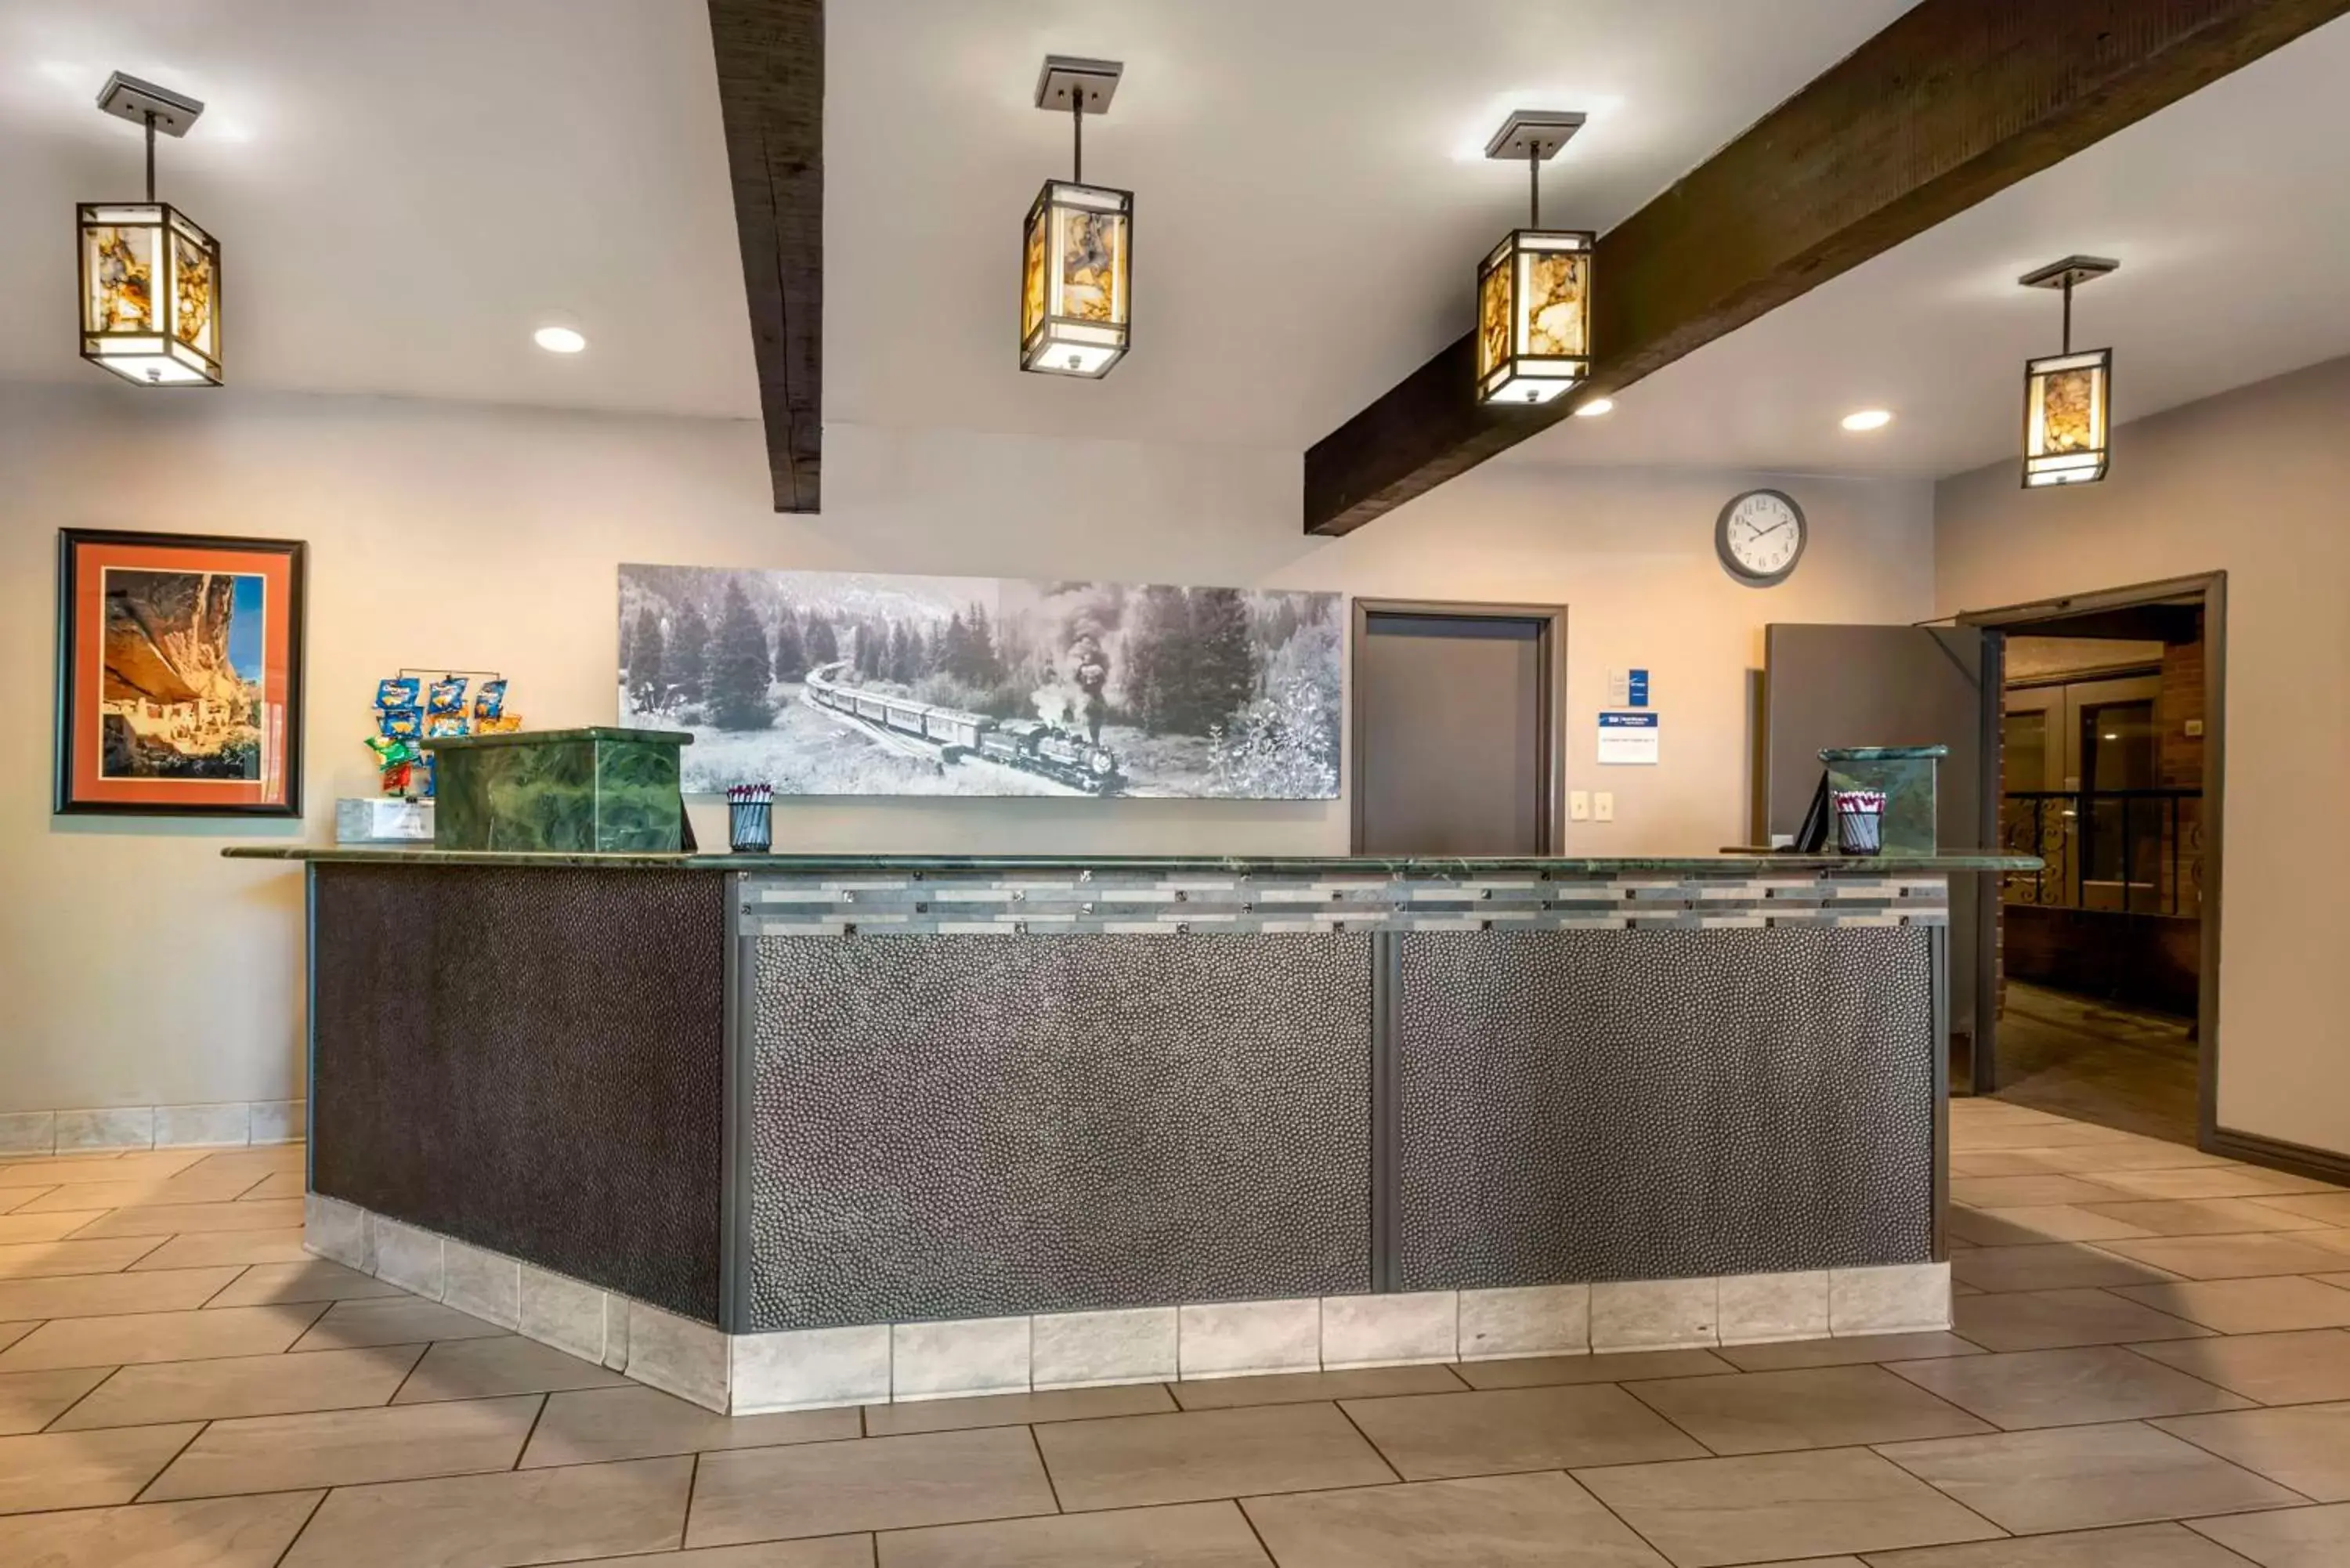 Lobby or reception, Lobby/Reception in Best Western Plus Rio Grande Inn